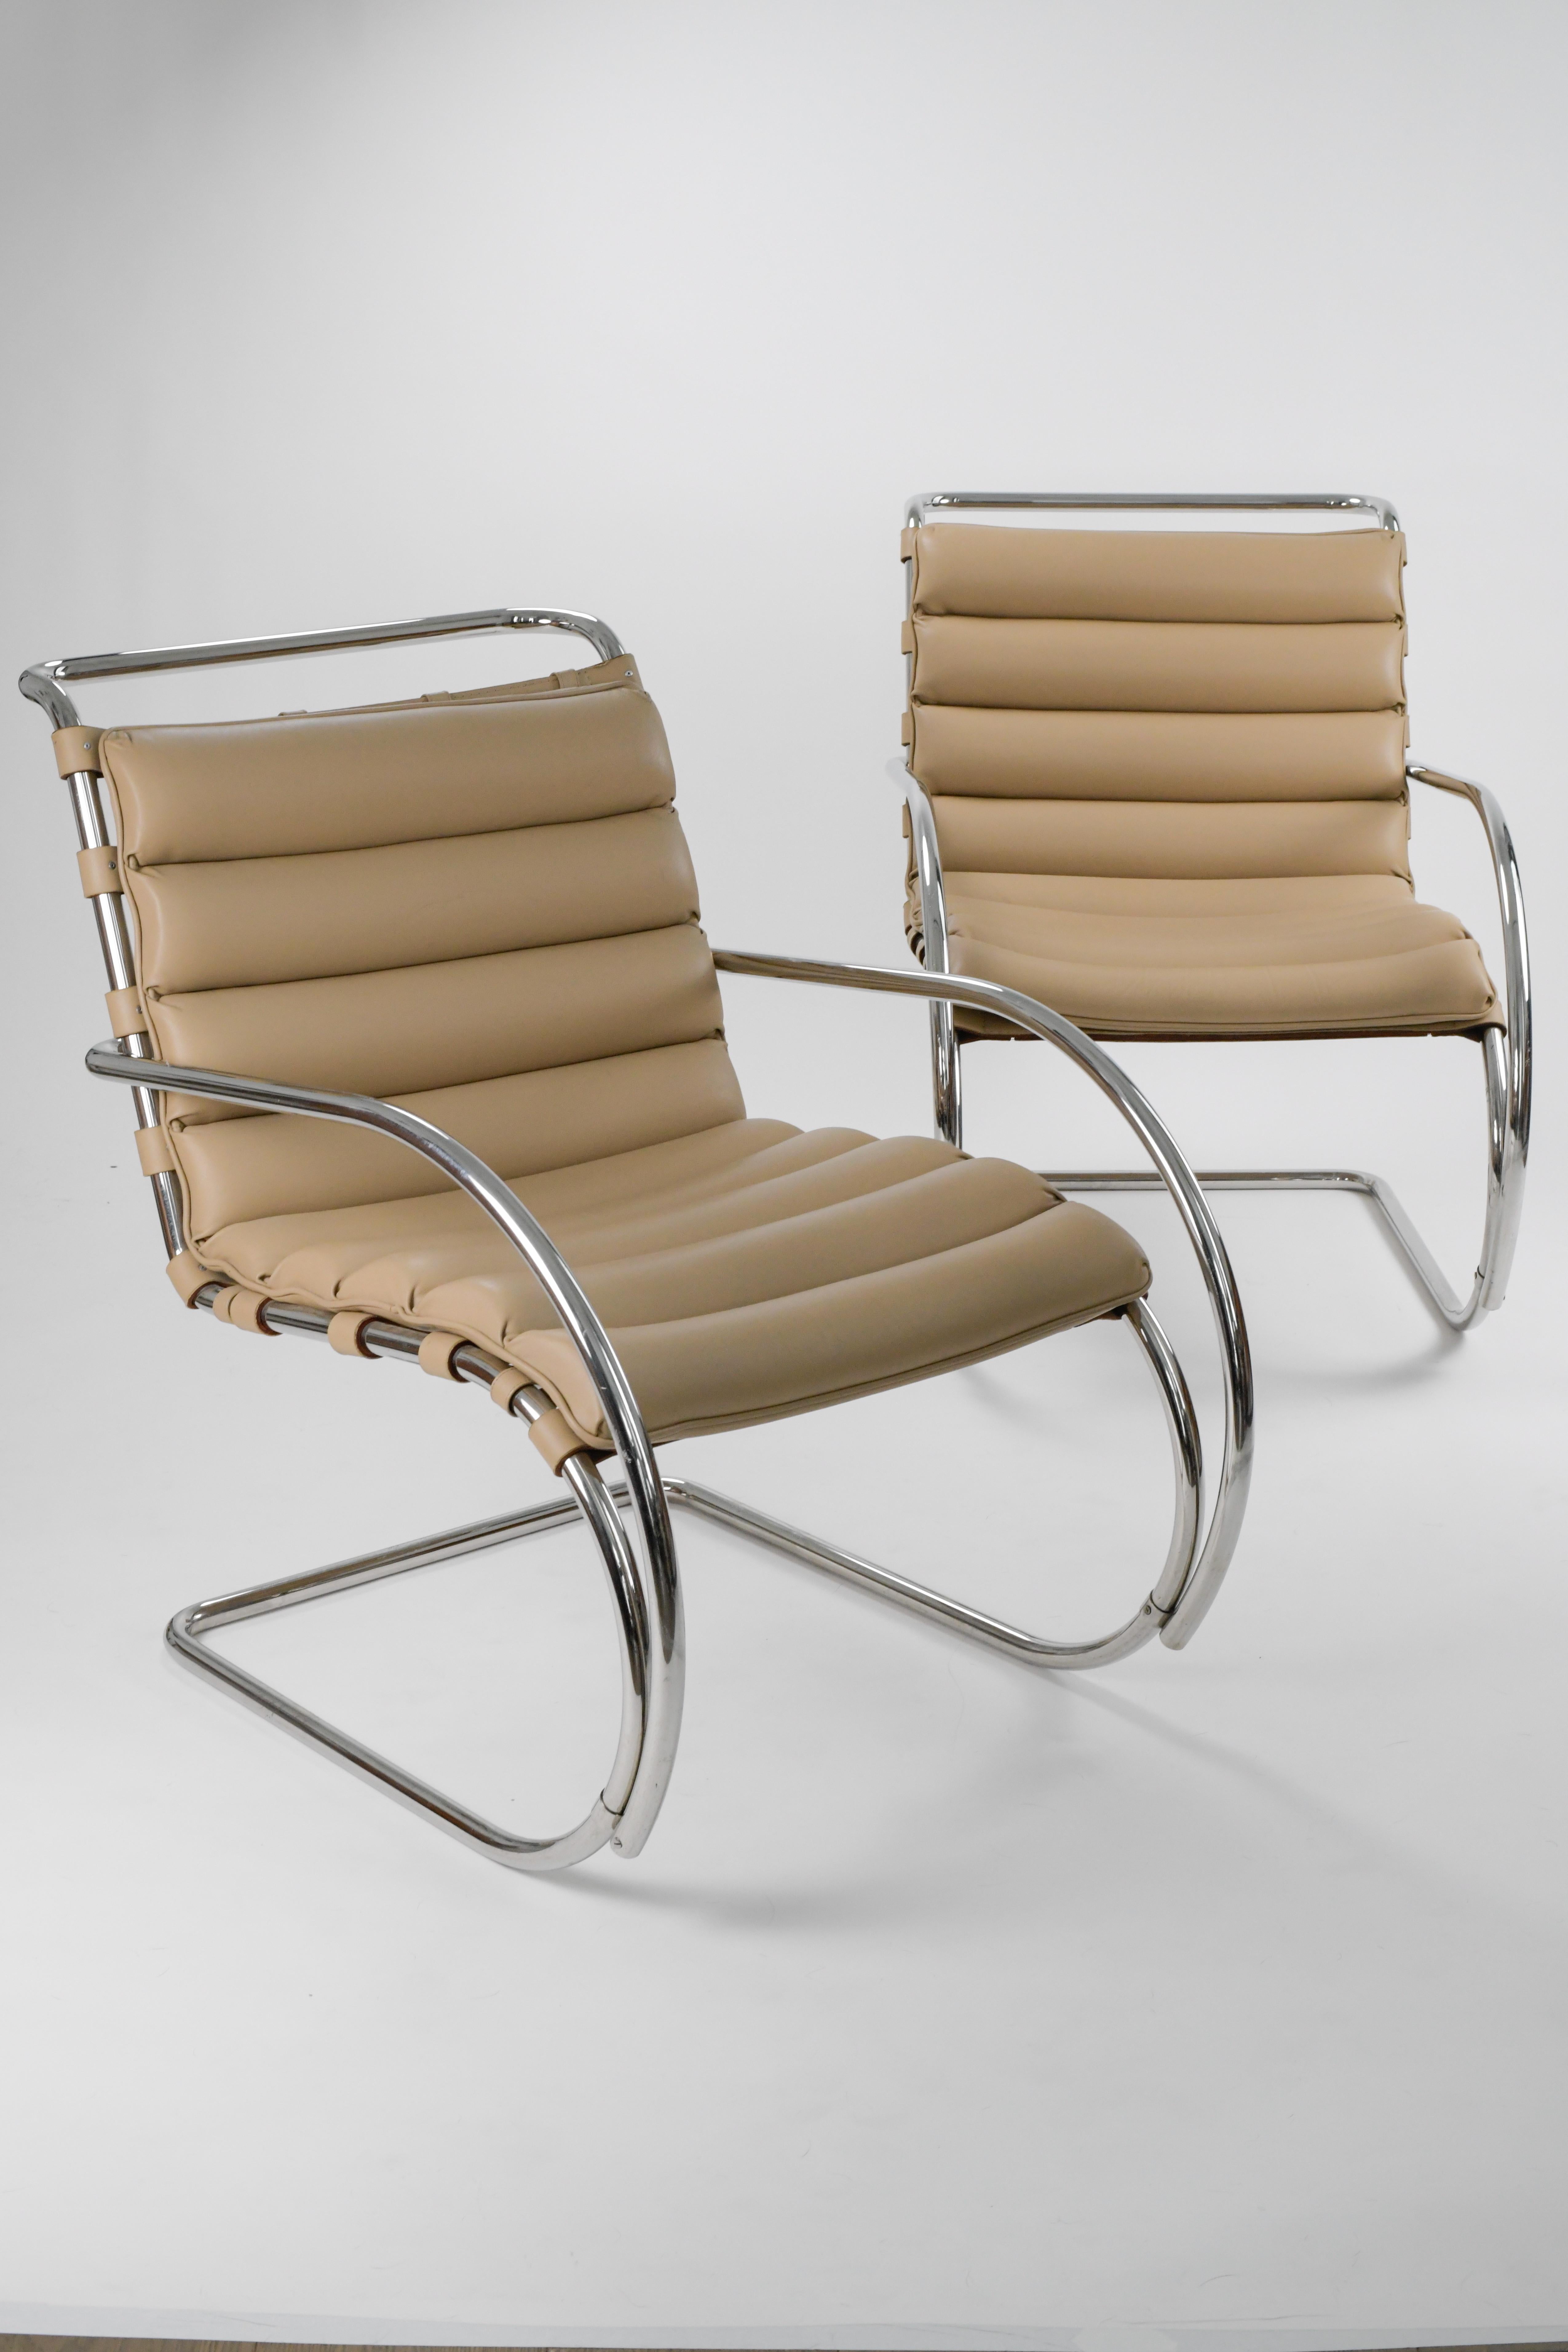 Très belle paire de chaises longues MR de Mies Van der Rohe pour Knoll en cuir fauve. Nous pensons que cette paire date des années 1980 et compte tenu de son âge, elle est en très bon état. Les pads en cuir sont intacts et ne présentent aucun